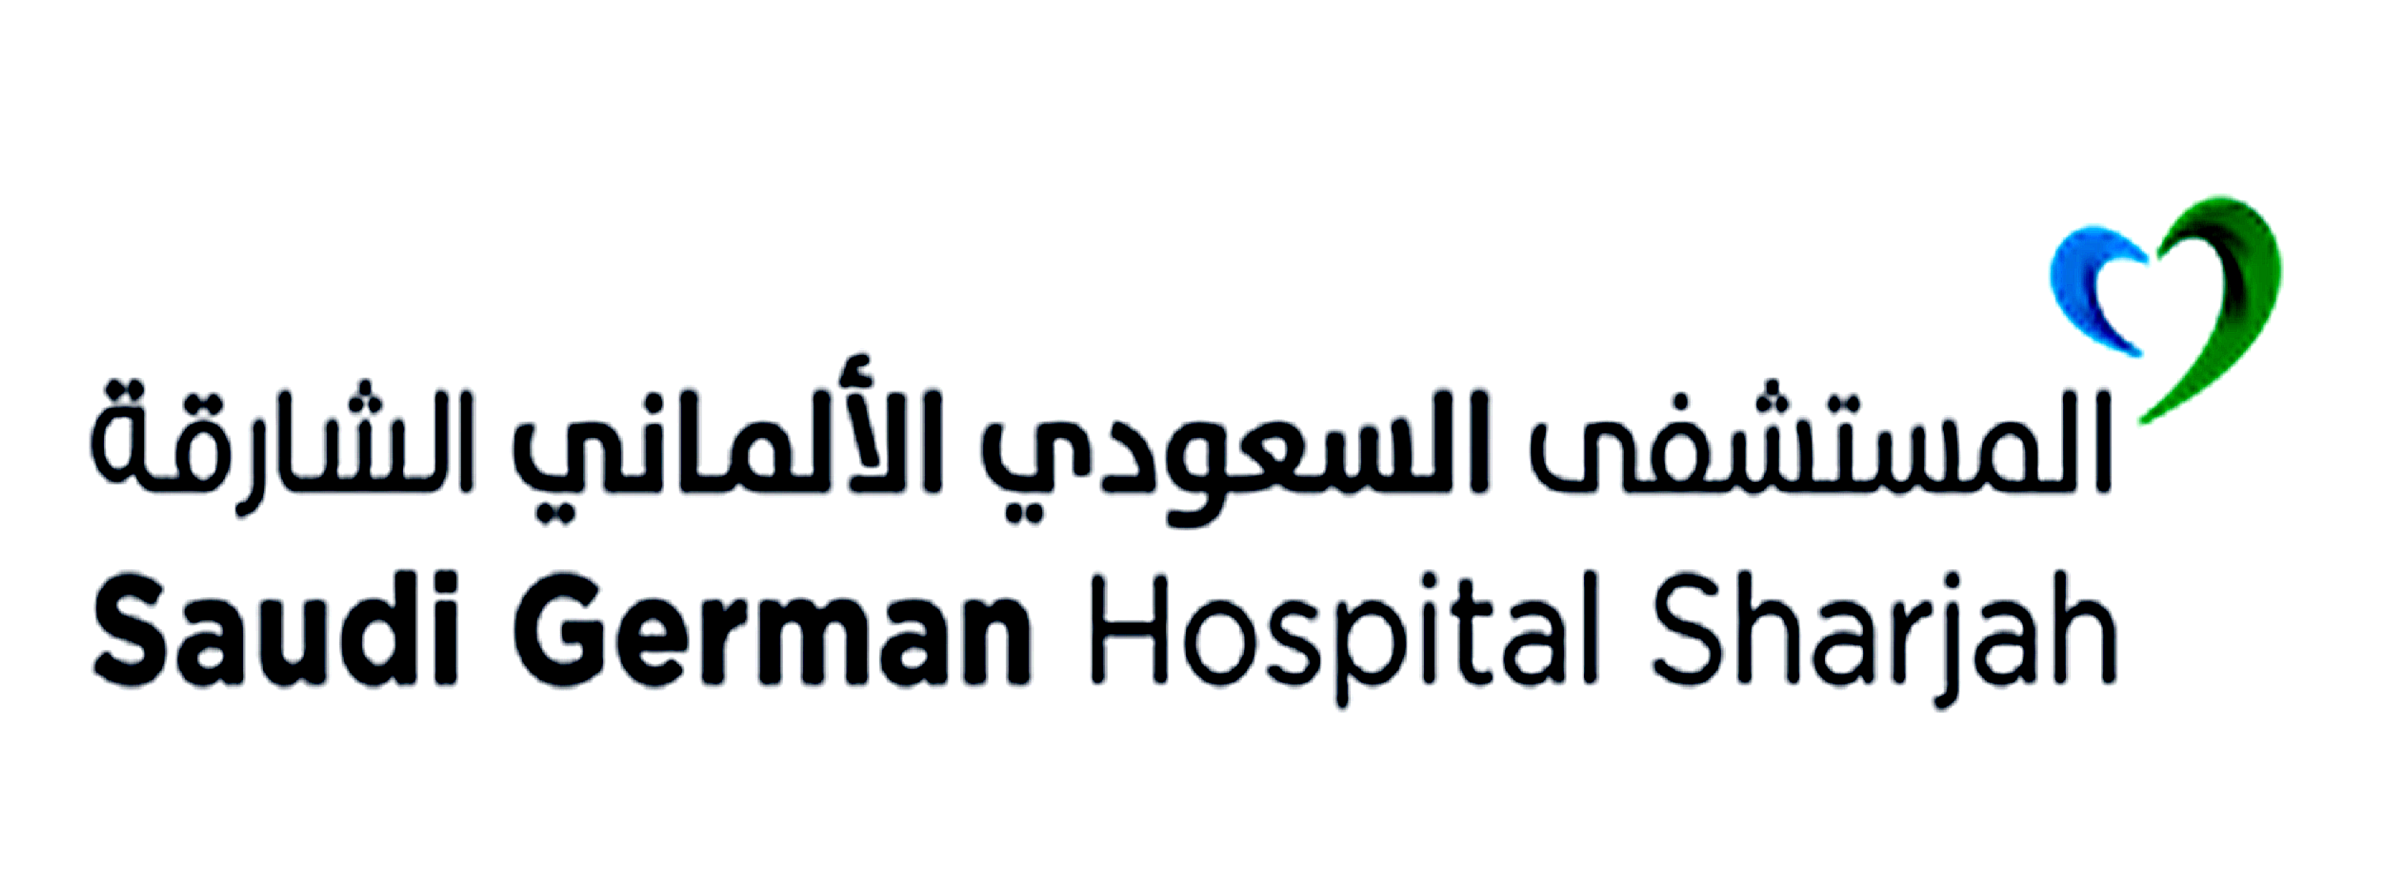 Saudi German Hospital, Sharjah